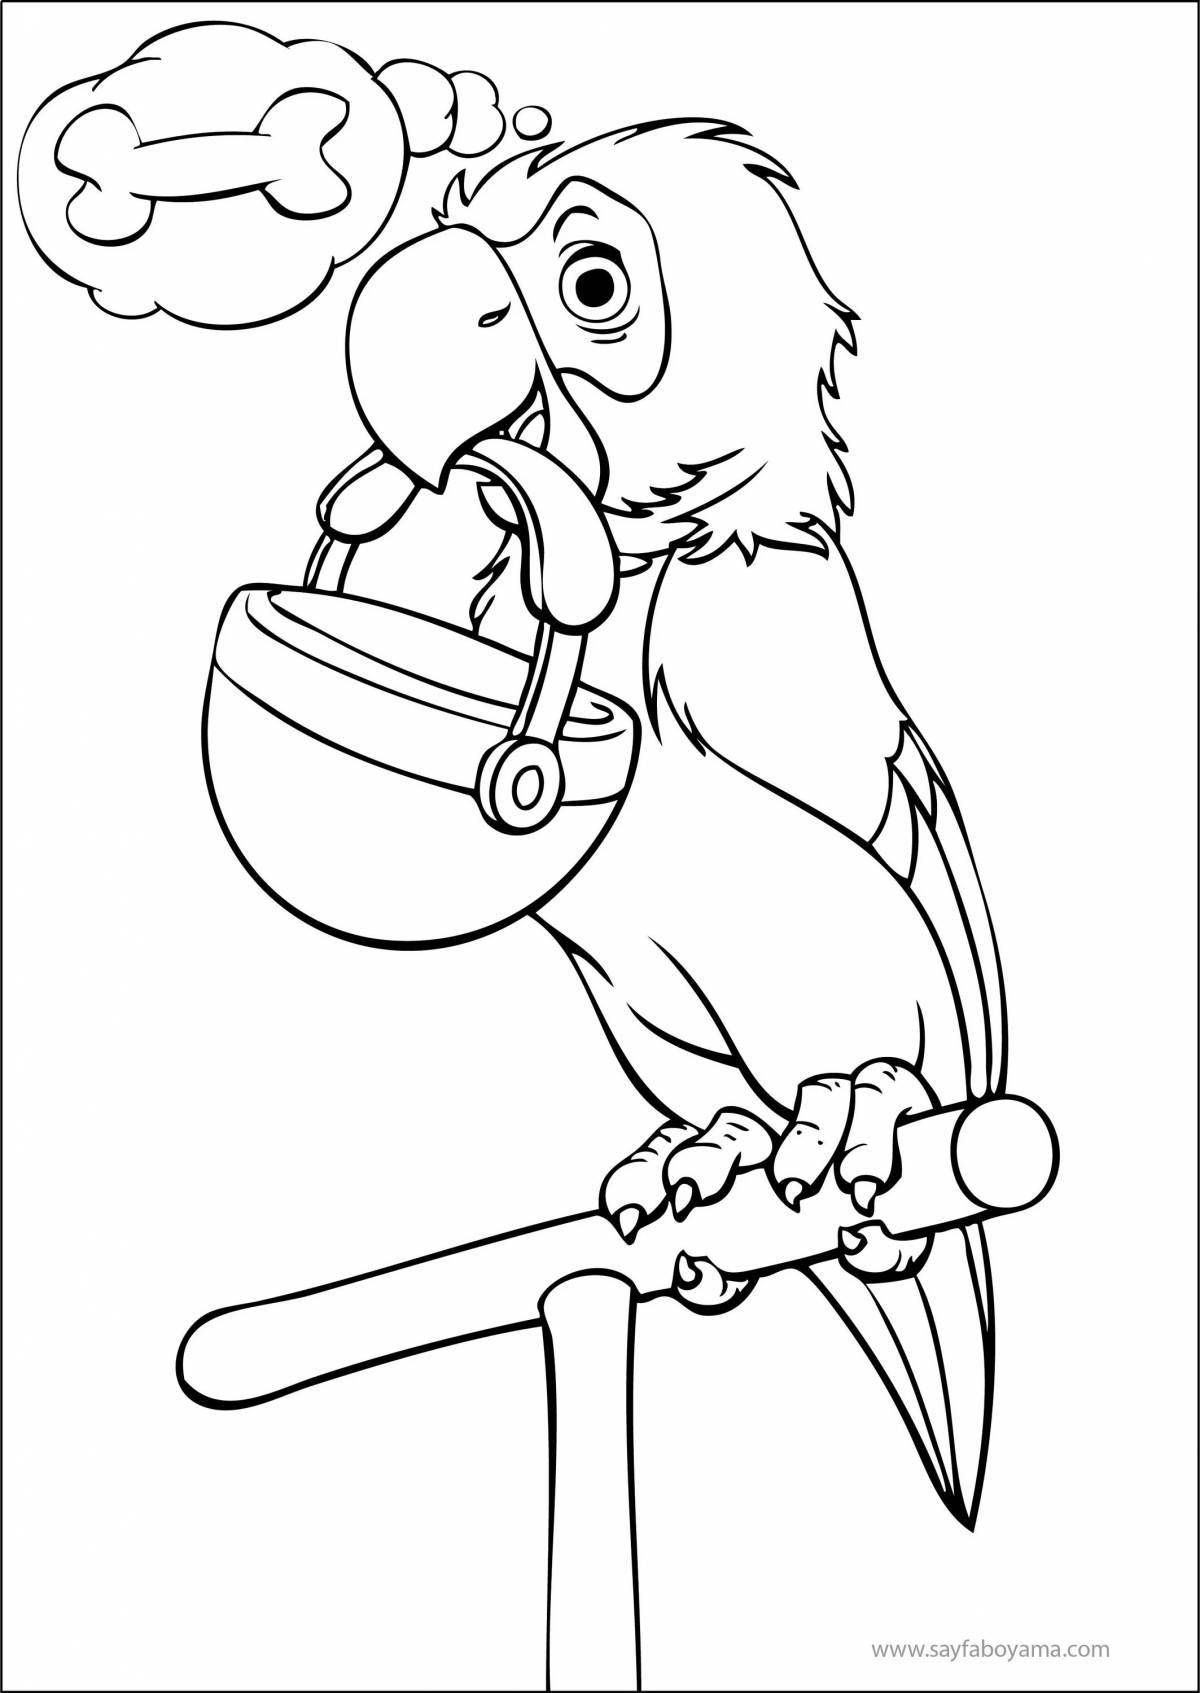 Великолепный попугай-раскраска для детей 6-7 лет